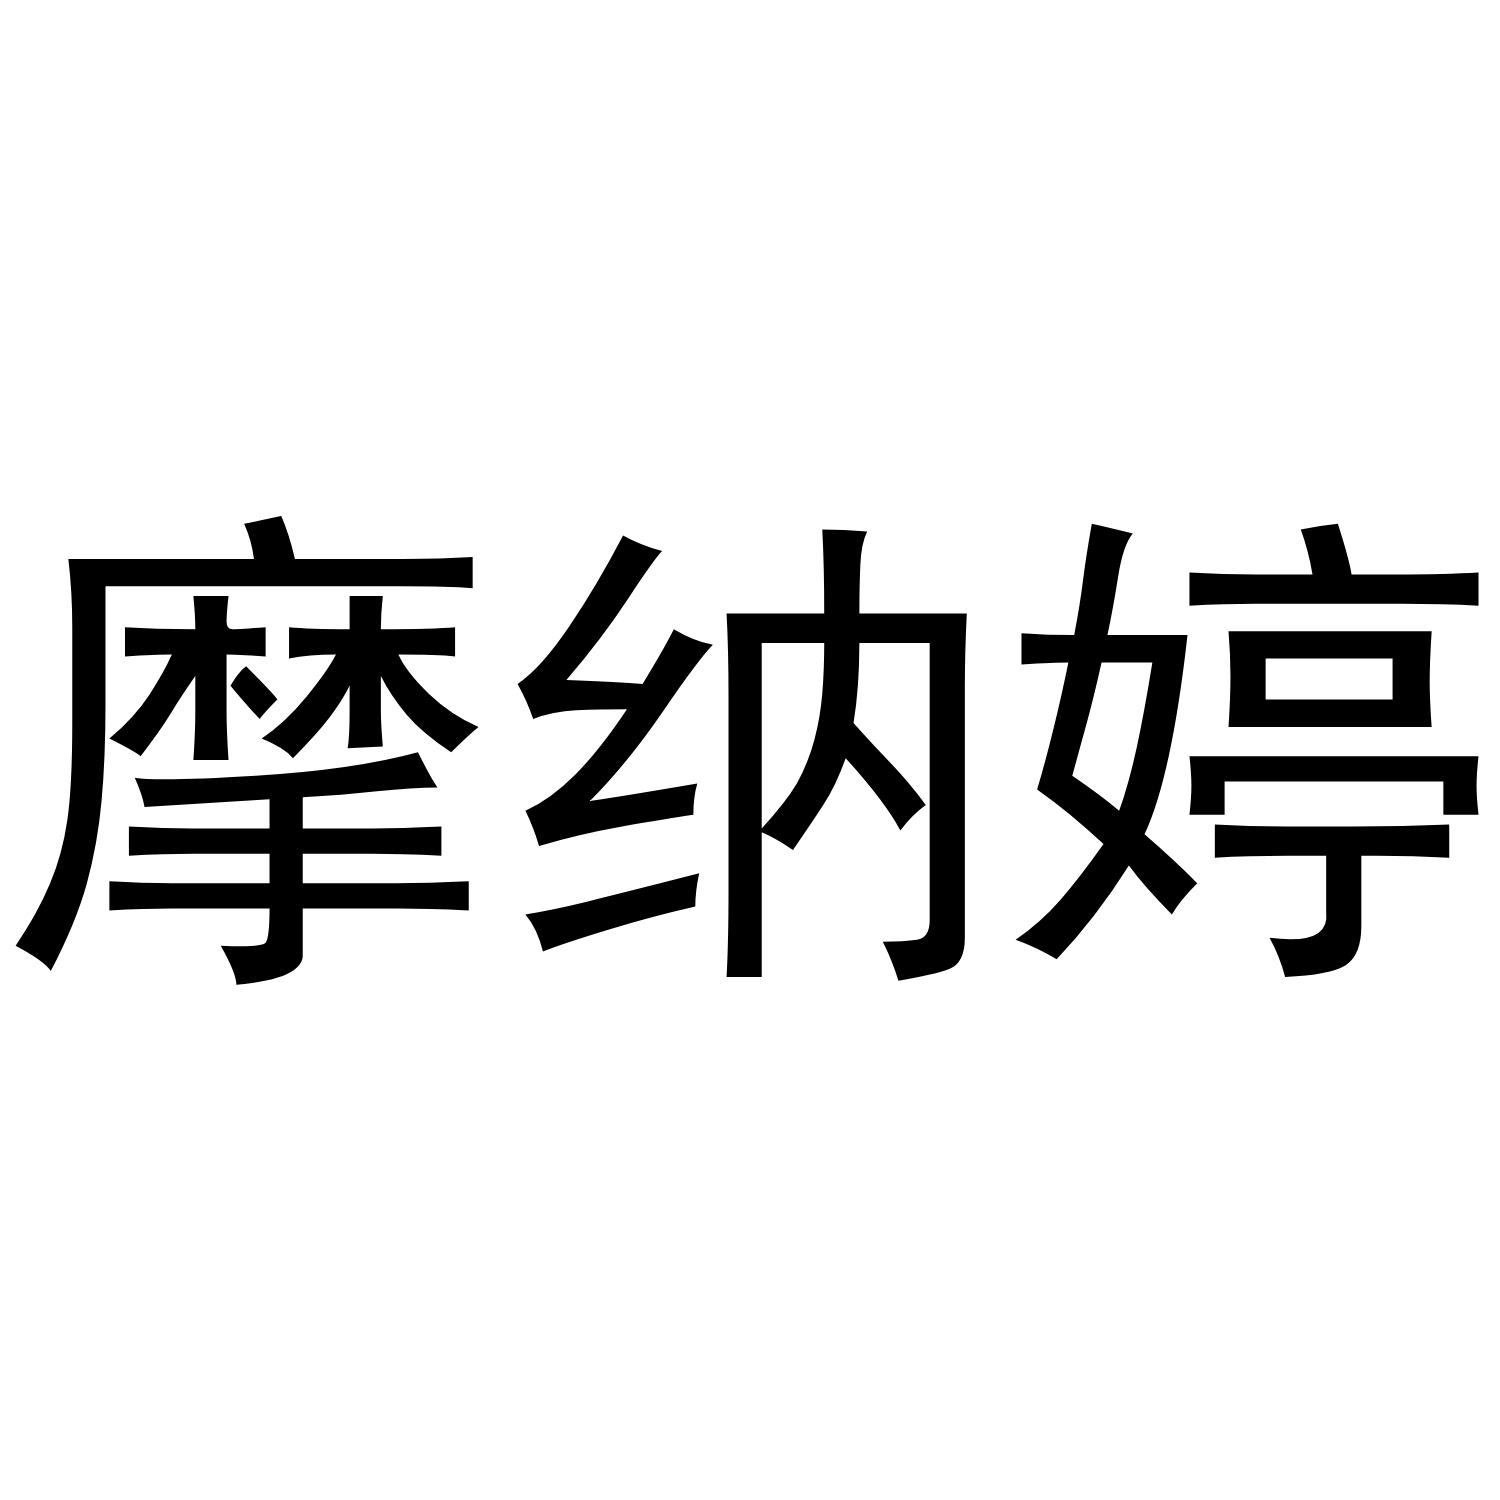 郑州念尔服饰有限公司商标摩纳婷（25类）商标转让费用及联系方式